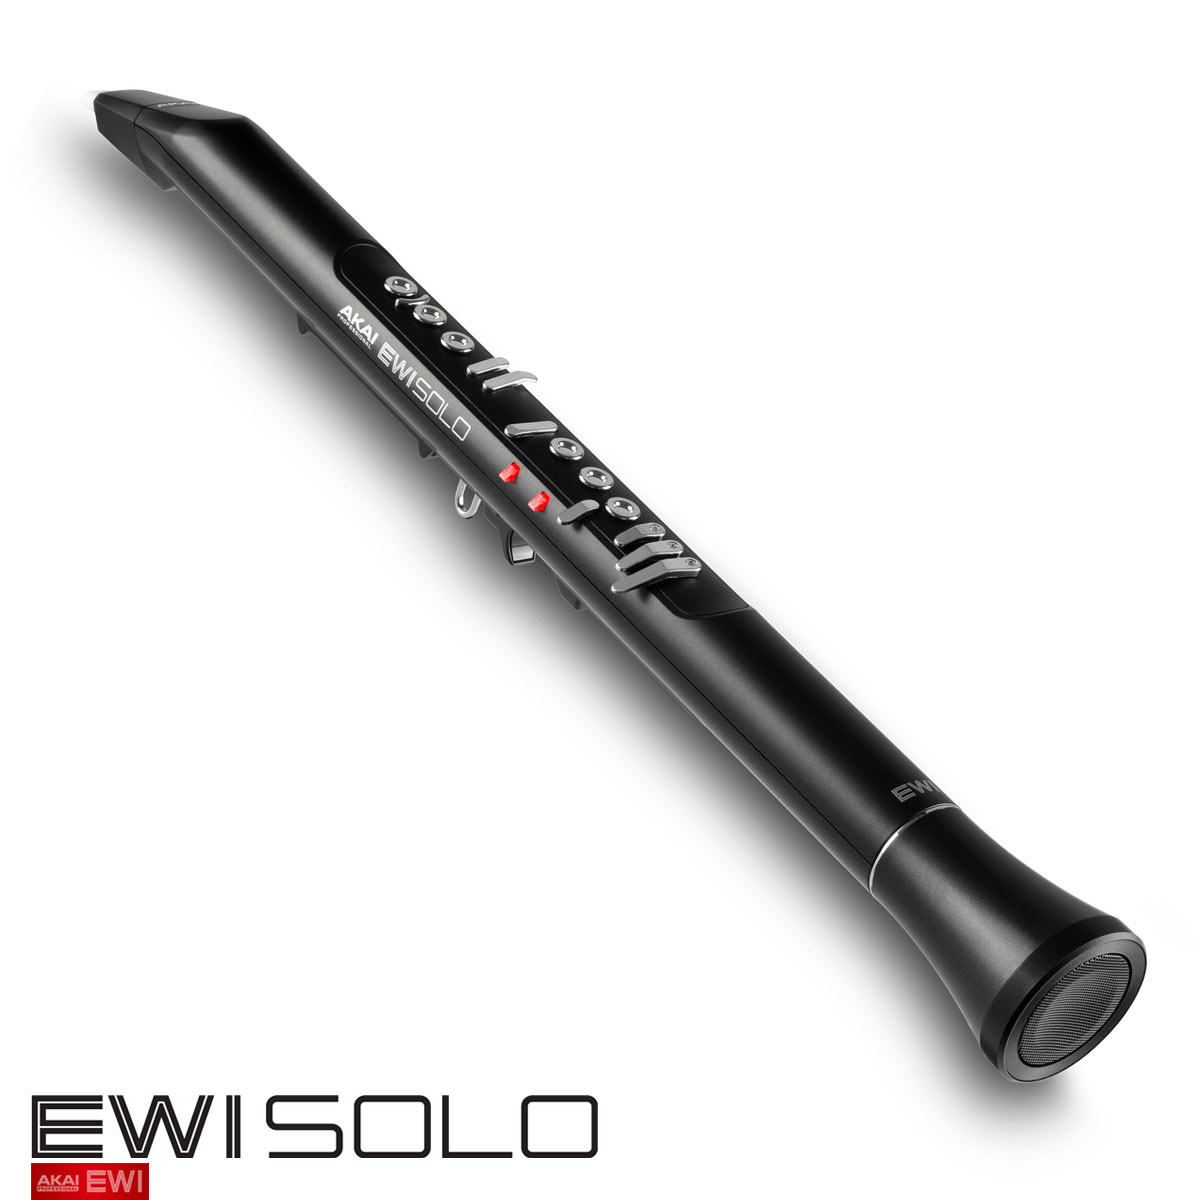 日本公司貨 AKAI EWI SOLO 電吹管 電子吹管 電薩克斯風 數位薩克斯風 管樂器 電子吹奏樂器 USB充電